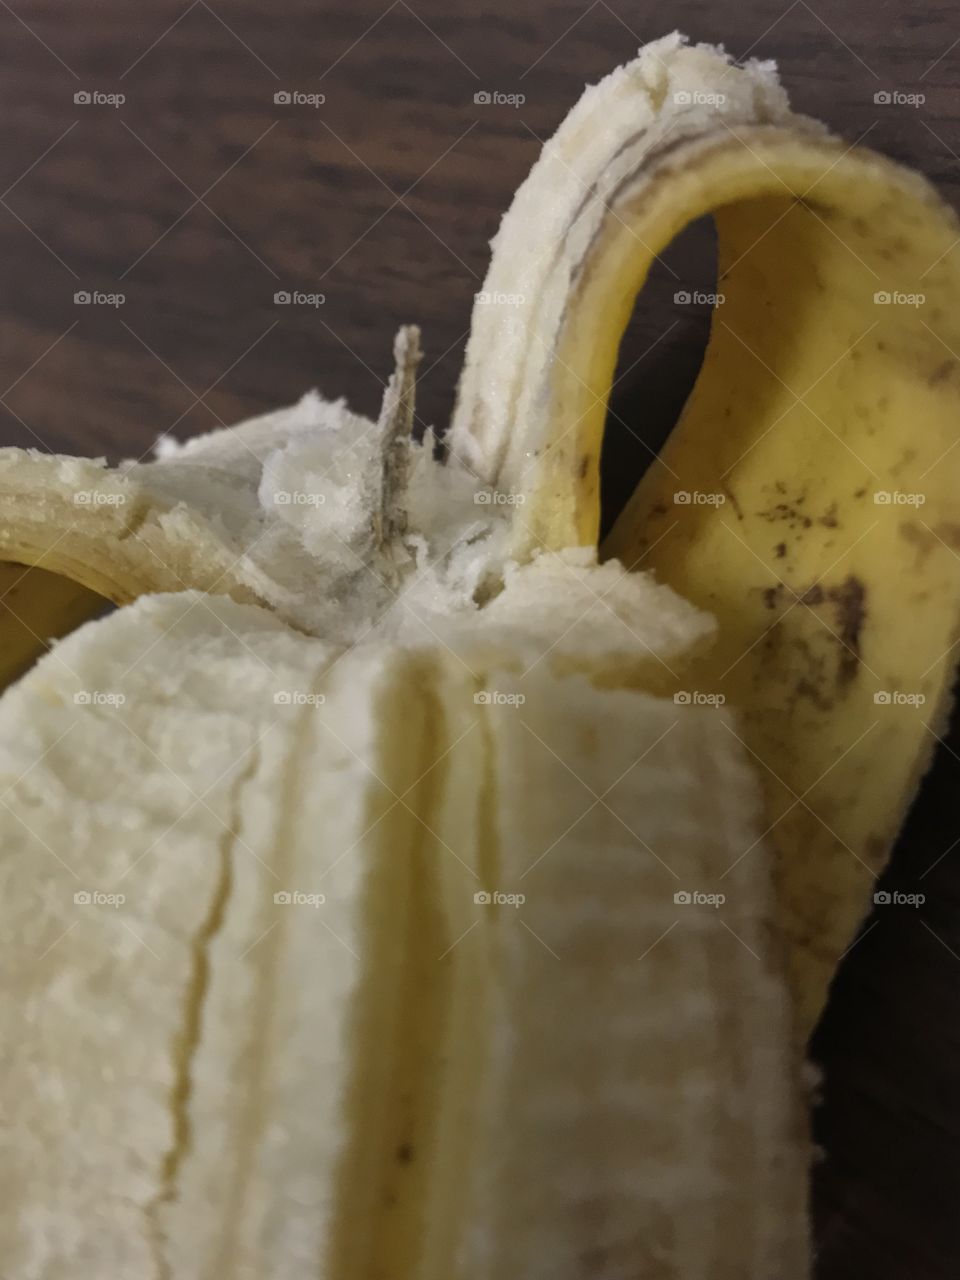 Peel banana